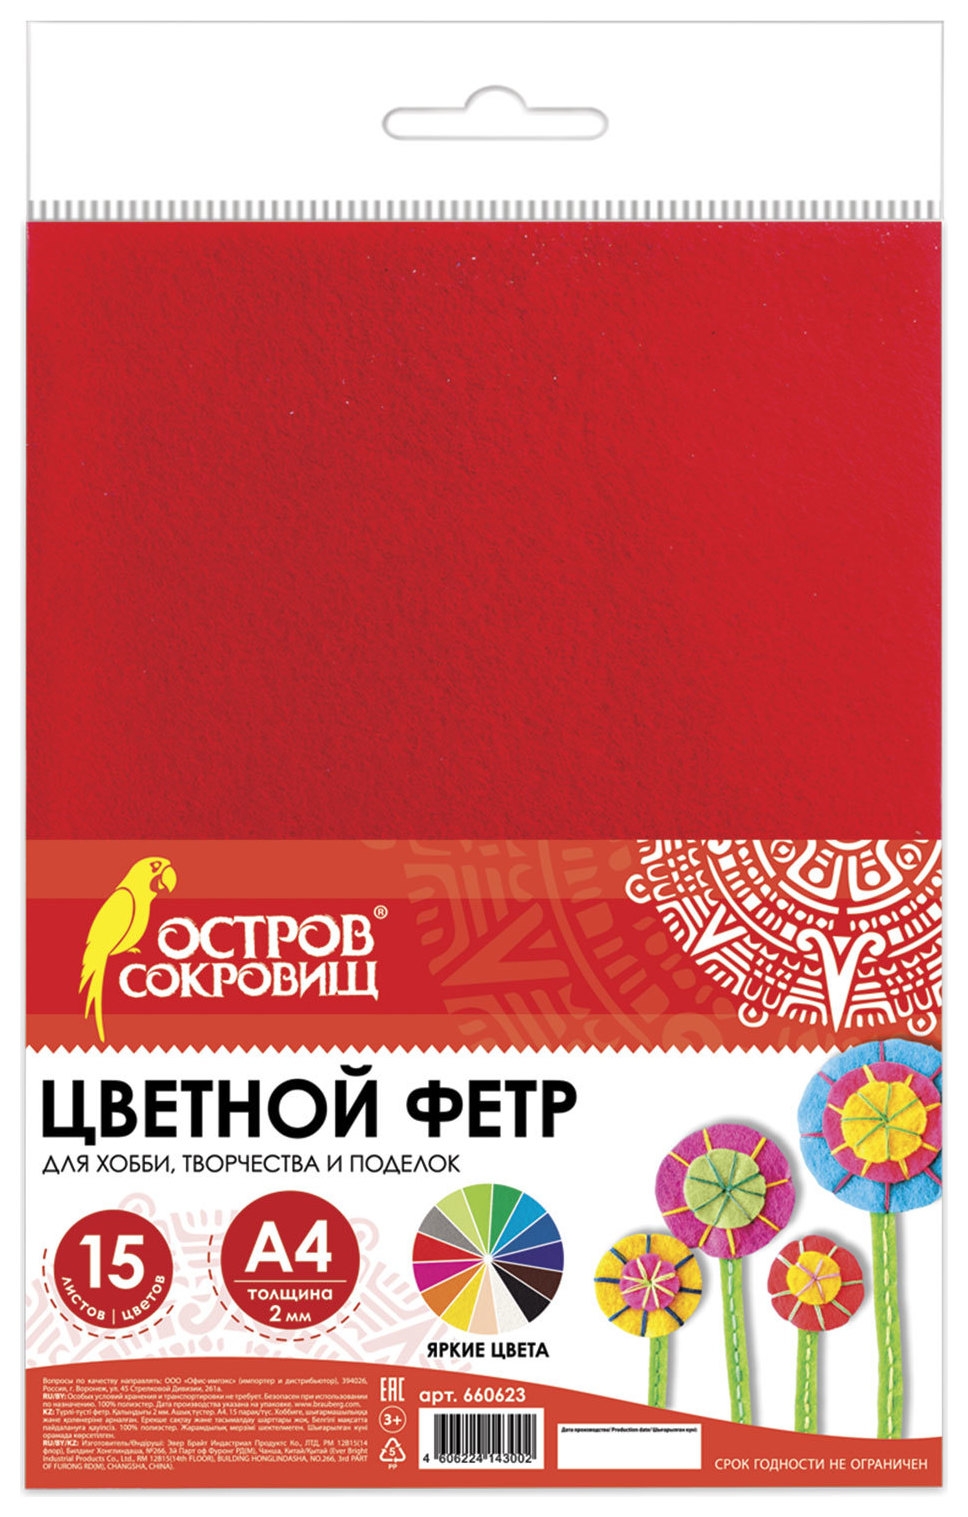 Цветной фетр для творчества, А4, 15 листов, 15 цветов, толщина 2 мм